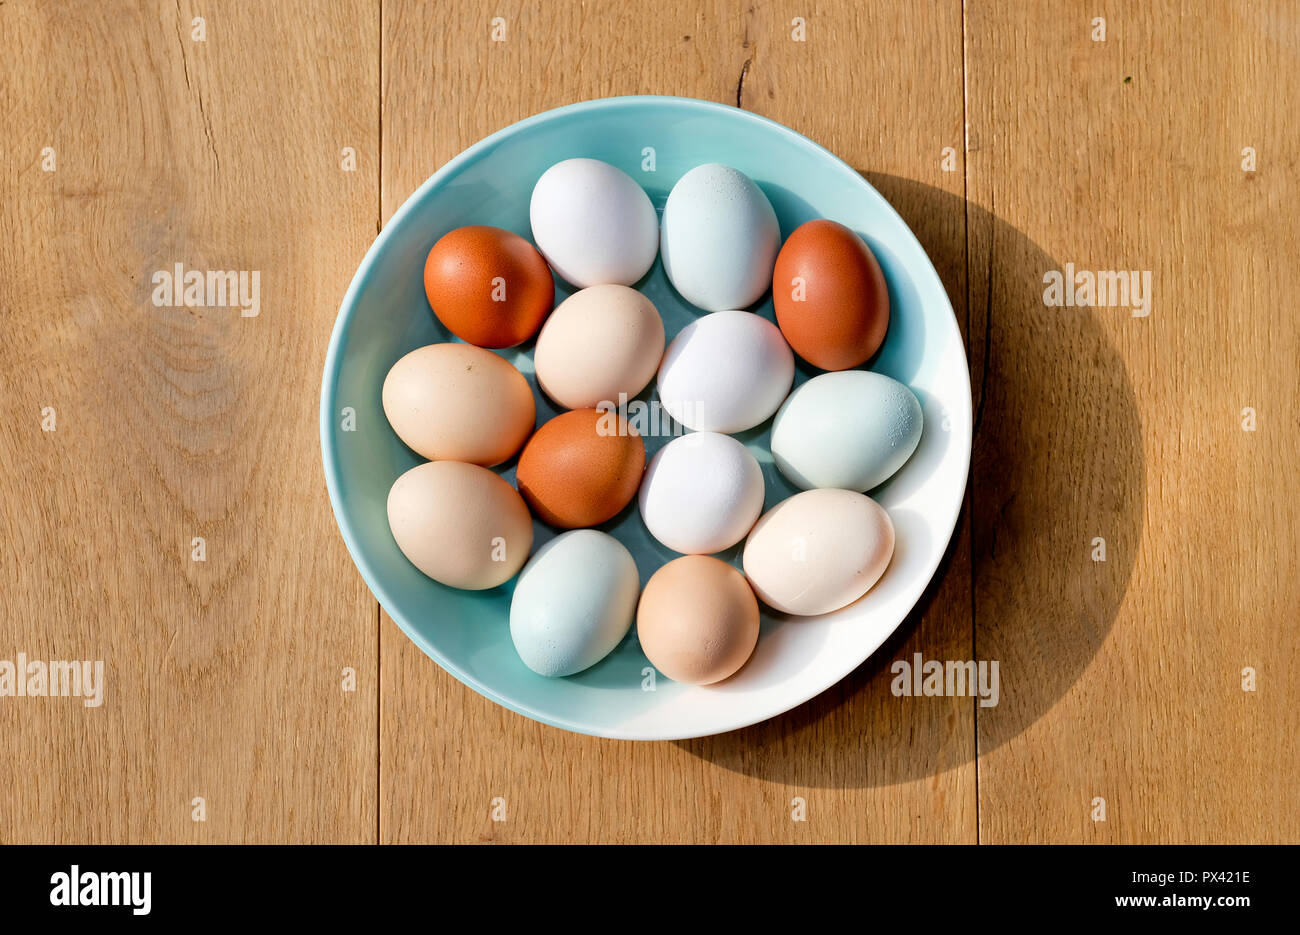 Un plato de pollo, huevos de diferentes colores visto desde arriba Foto de stock